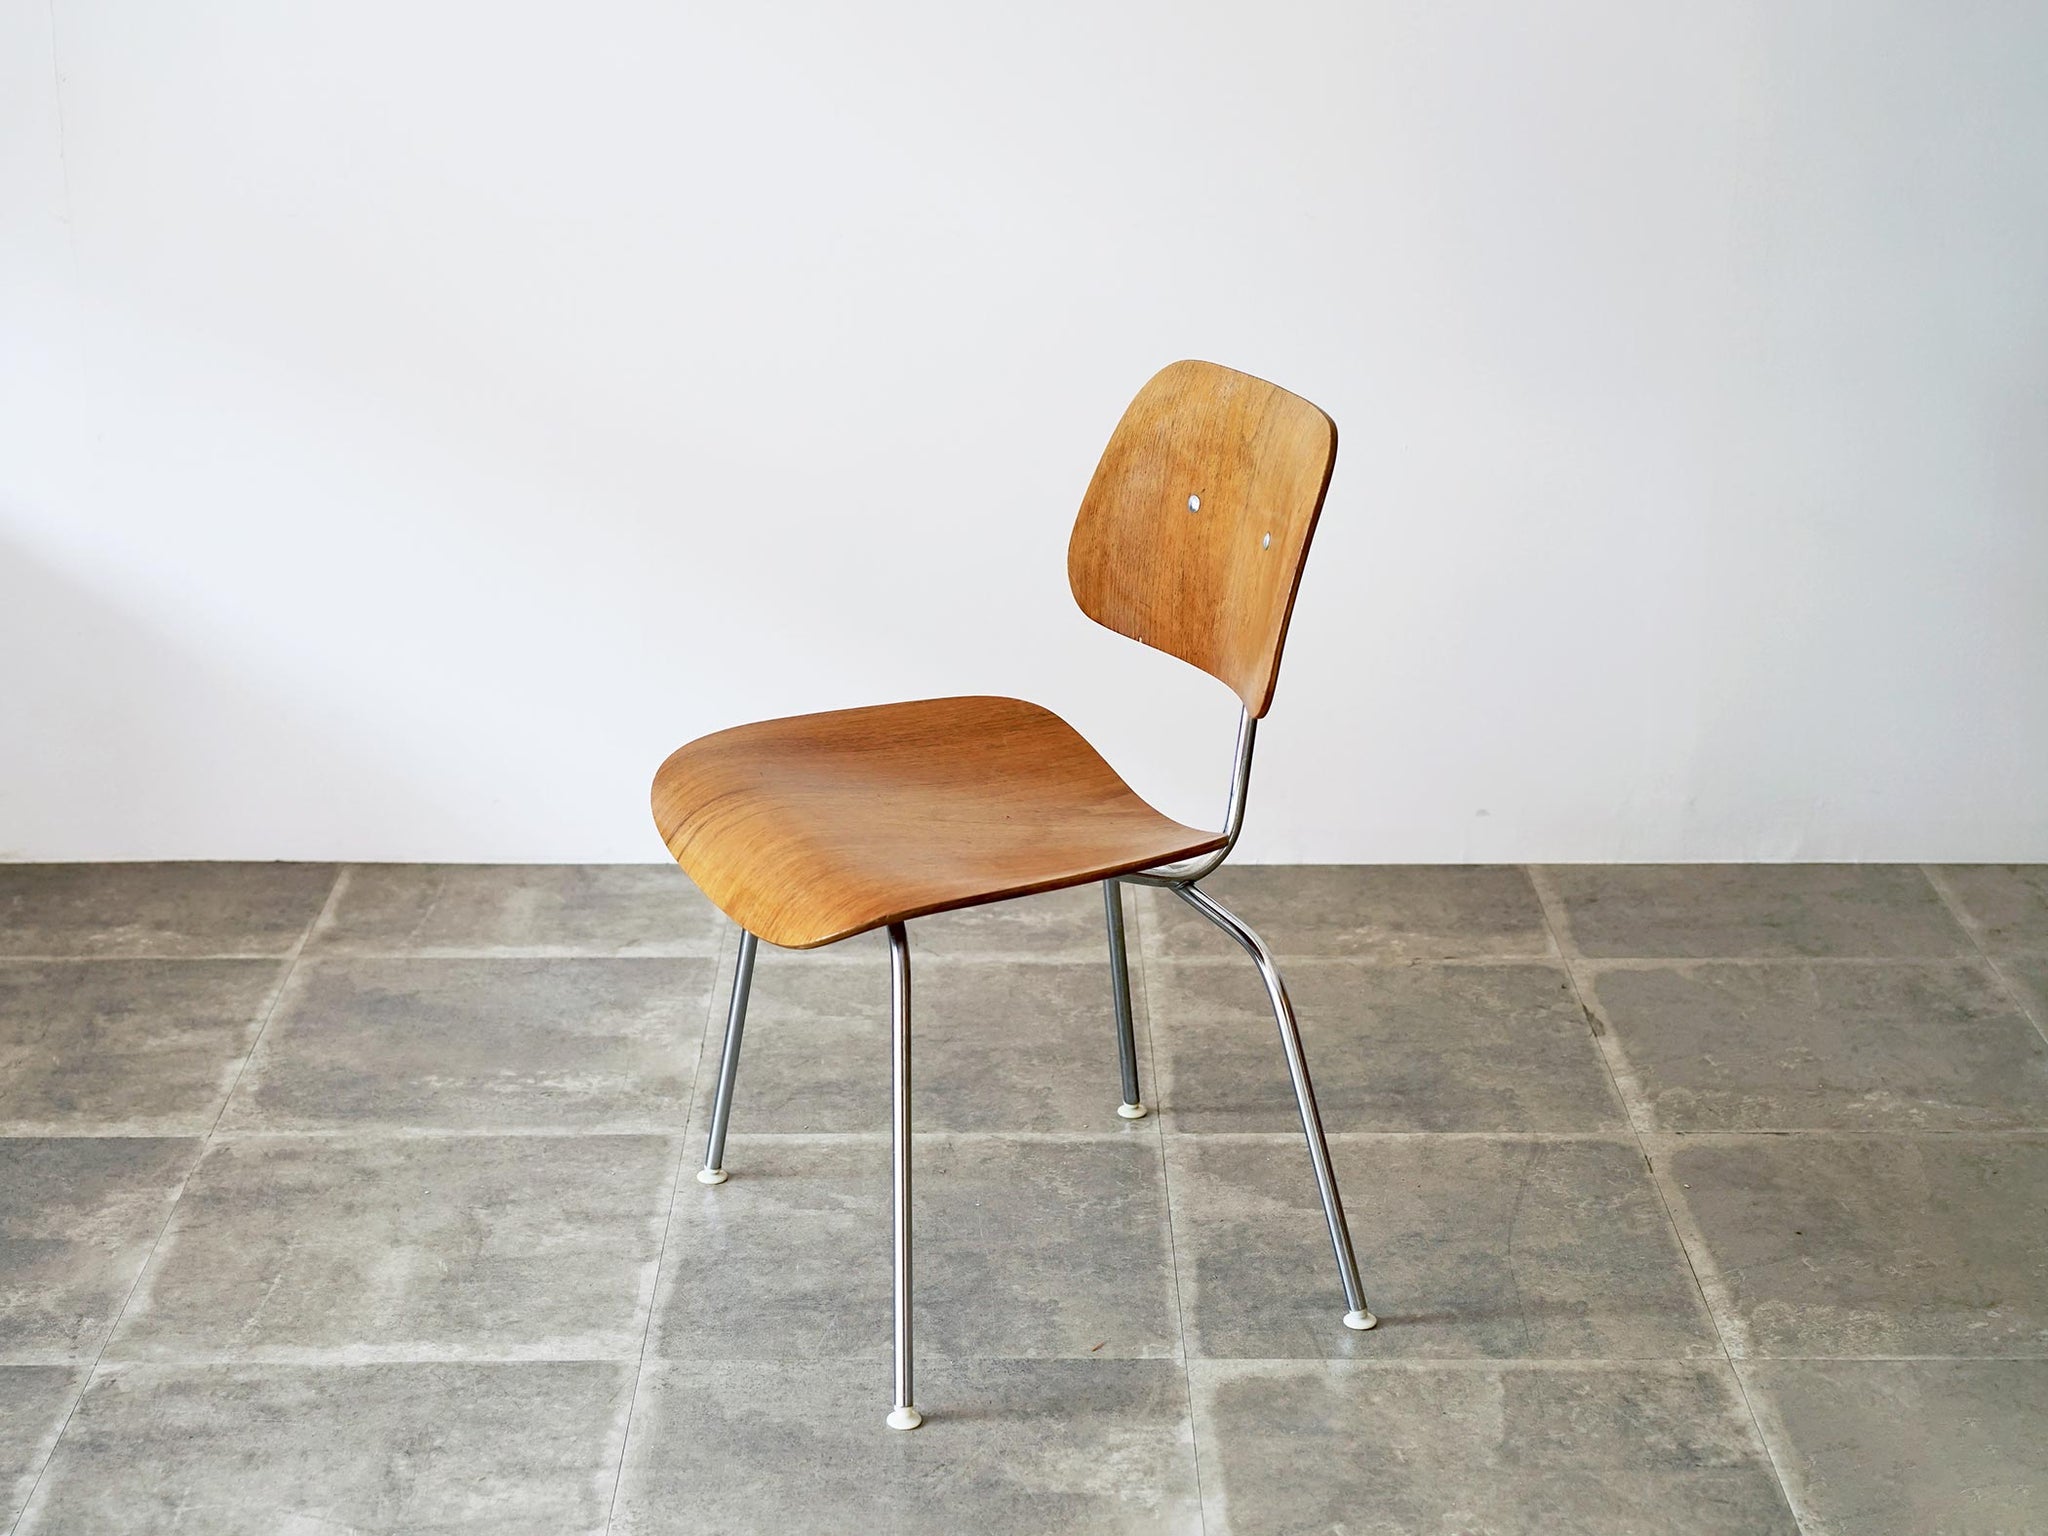 1946〜49年製造 希少vintage EVANS社製DCMチェア - 椅子/チェア